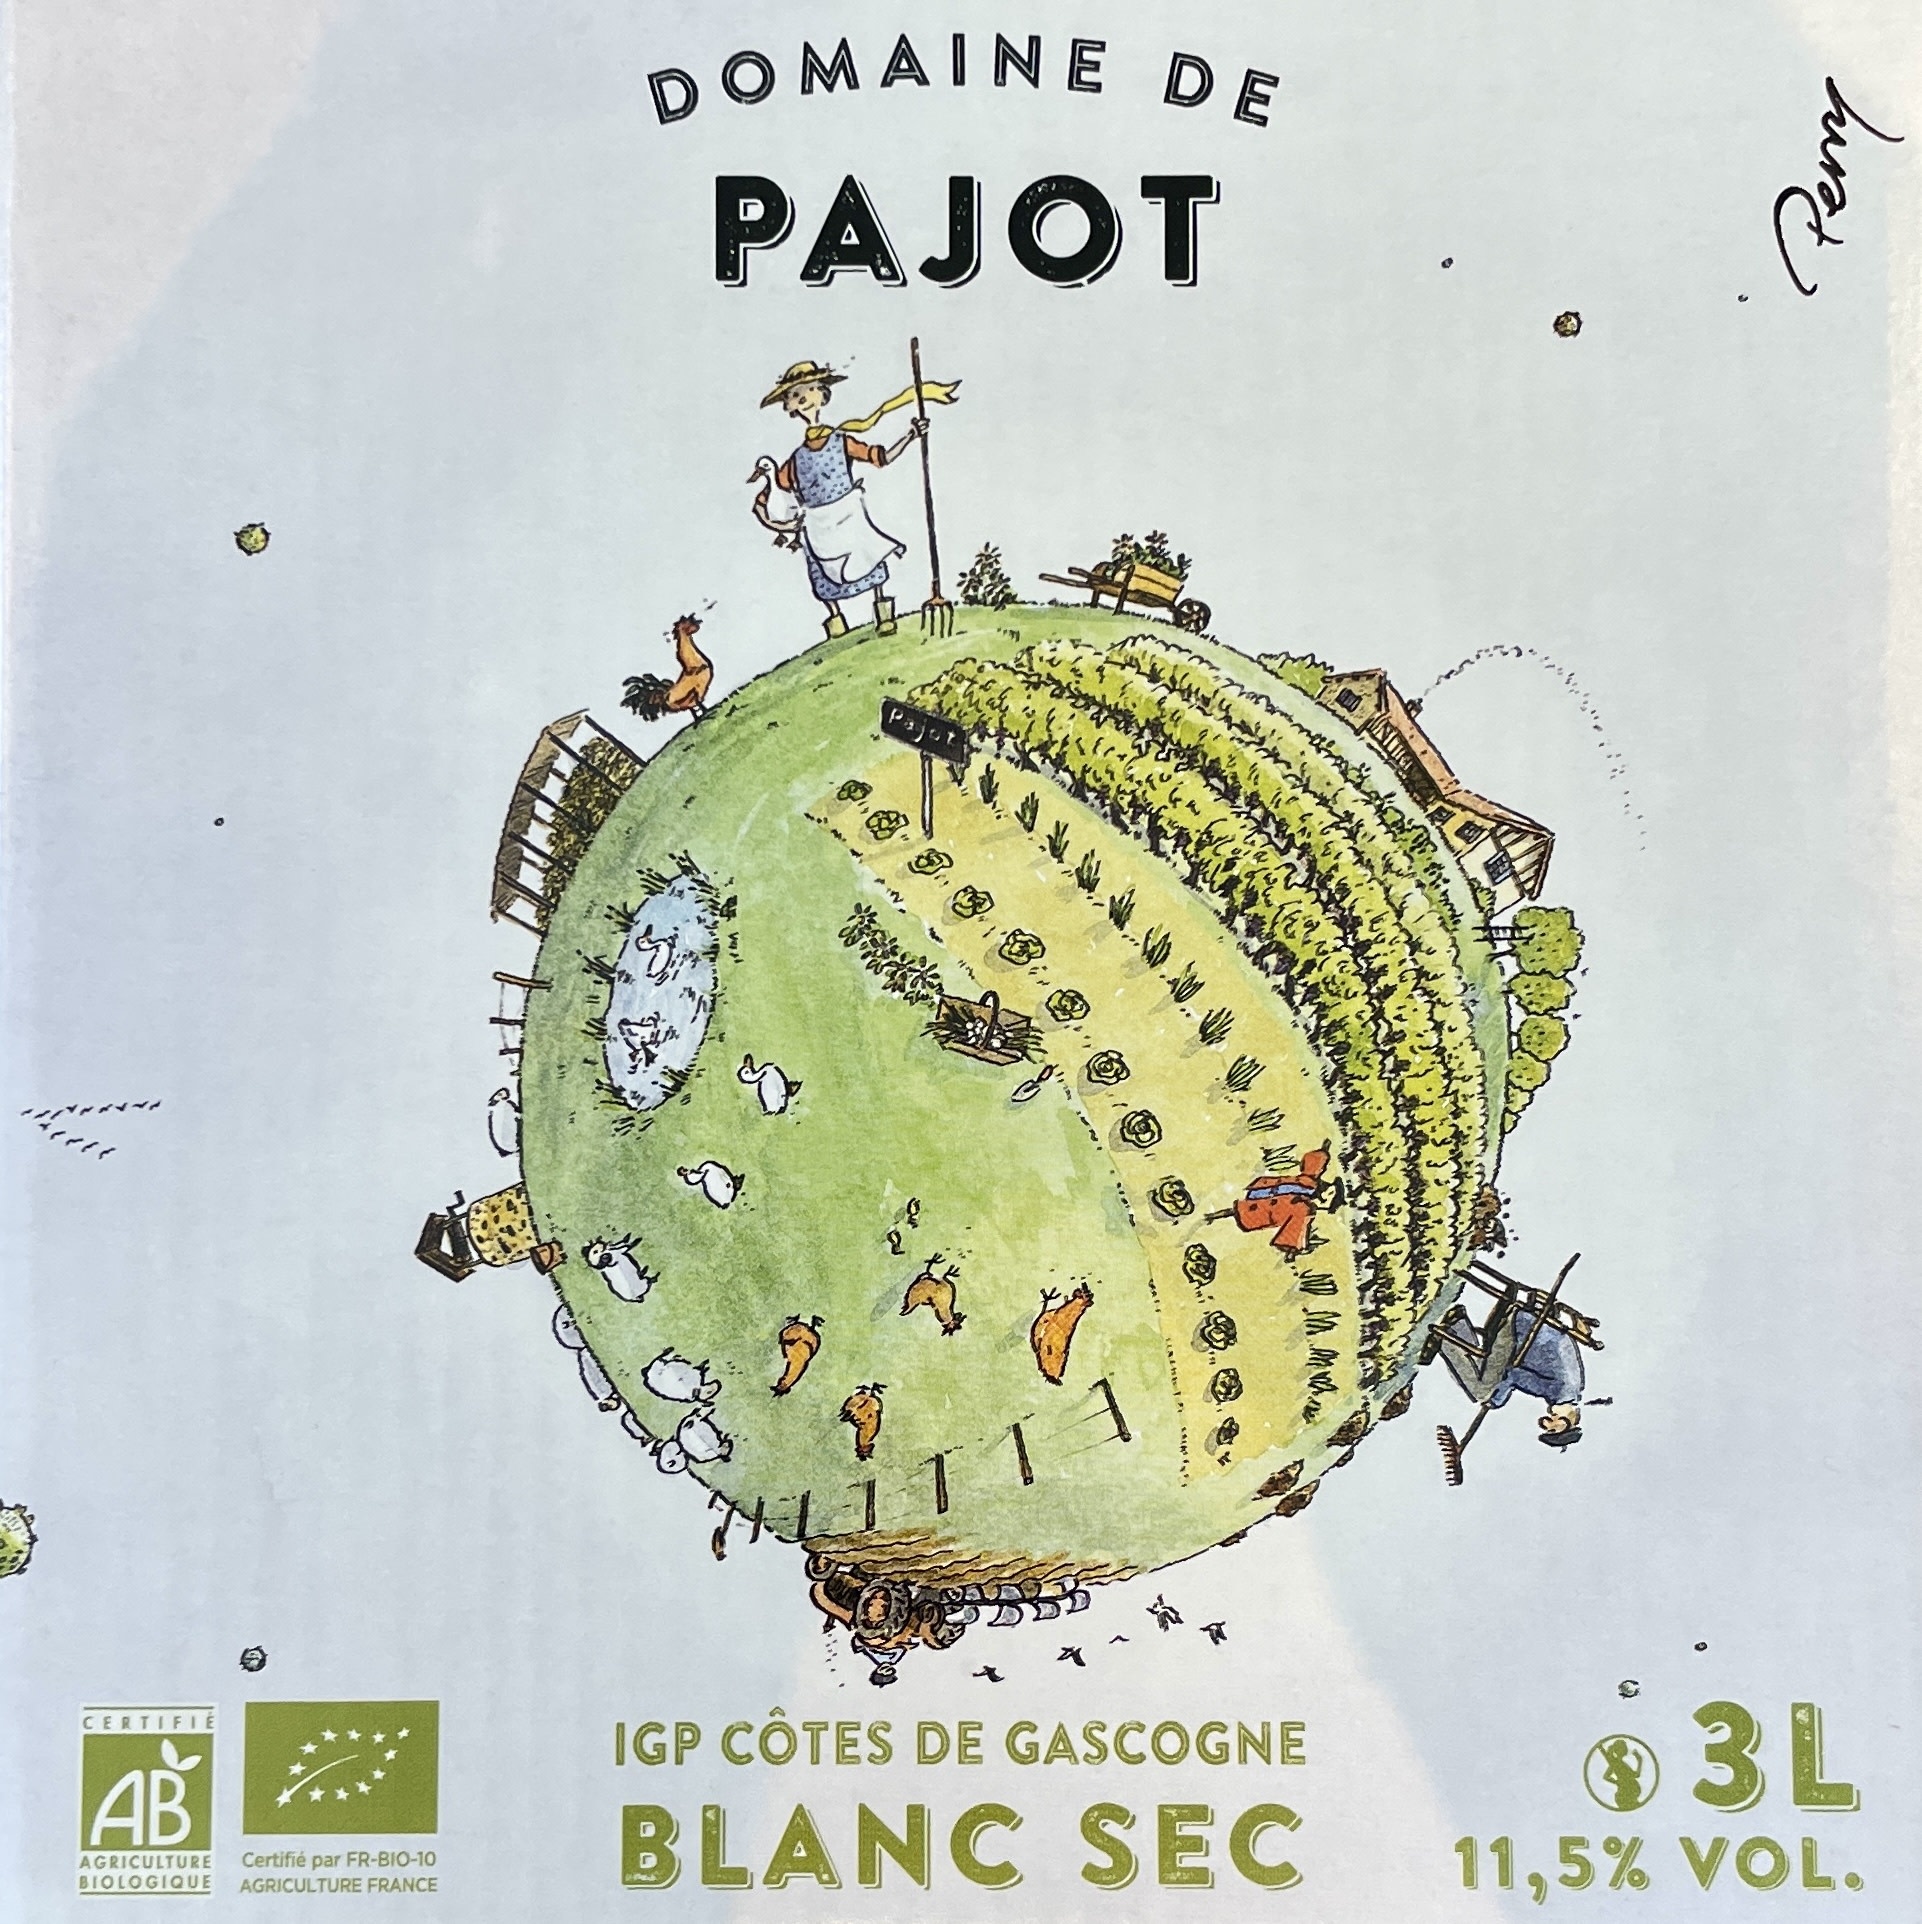 France 2021 Domaine de Pajot Cotes de Gascogne "Planete Gascogne" 3L BIB